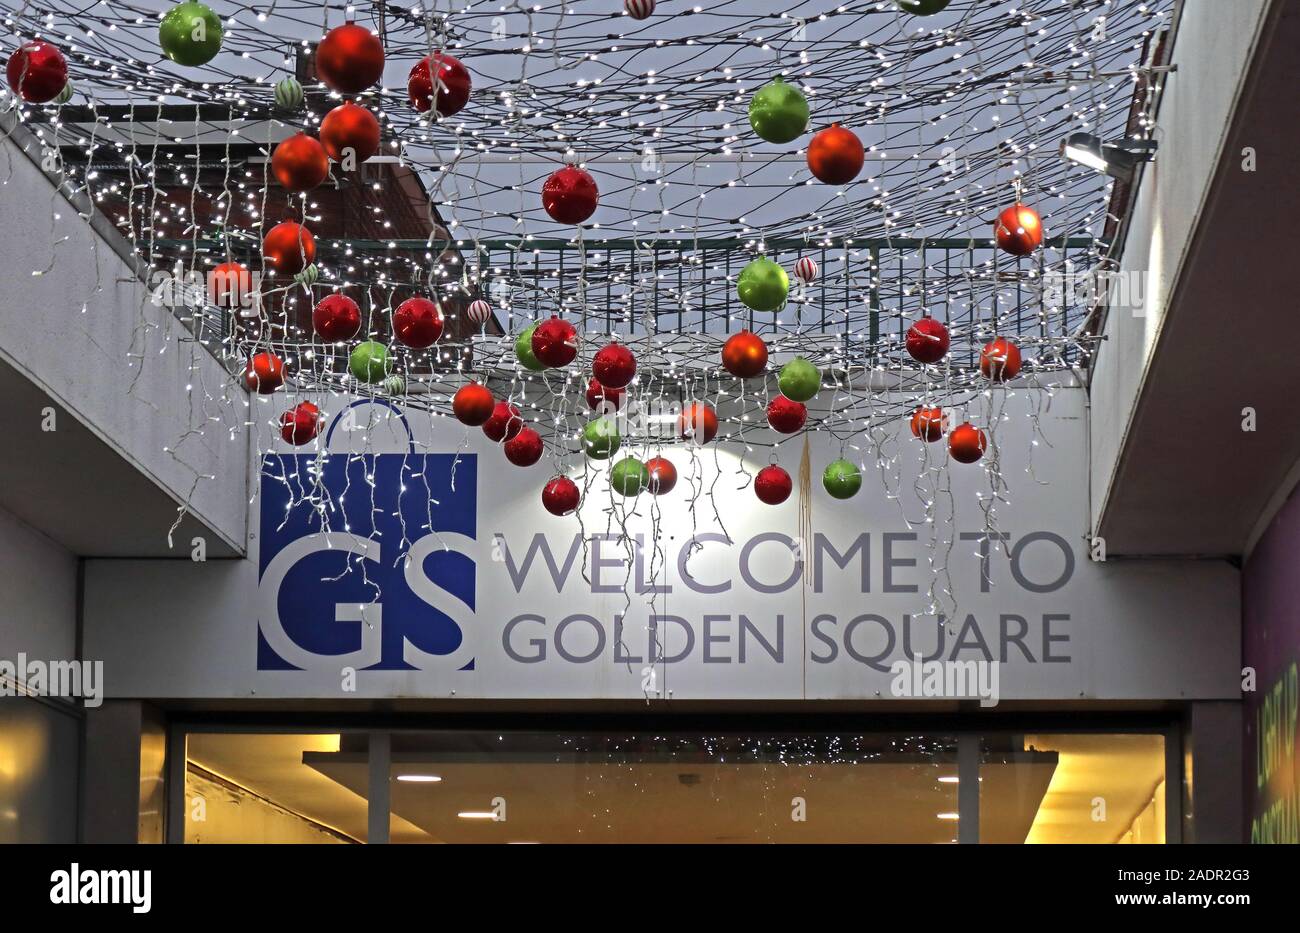 GS,Bienvenue à Golden Square, shopping de Noël, Golden Square, Warrington, Cheshire, Angleterre, Royaume-Uni Banque D'Images